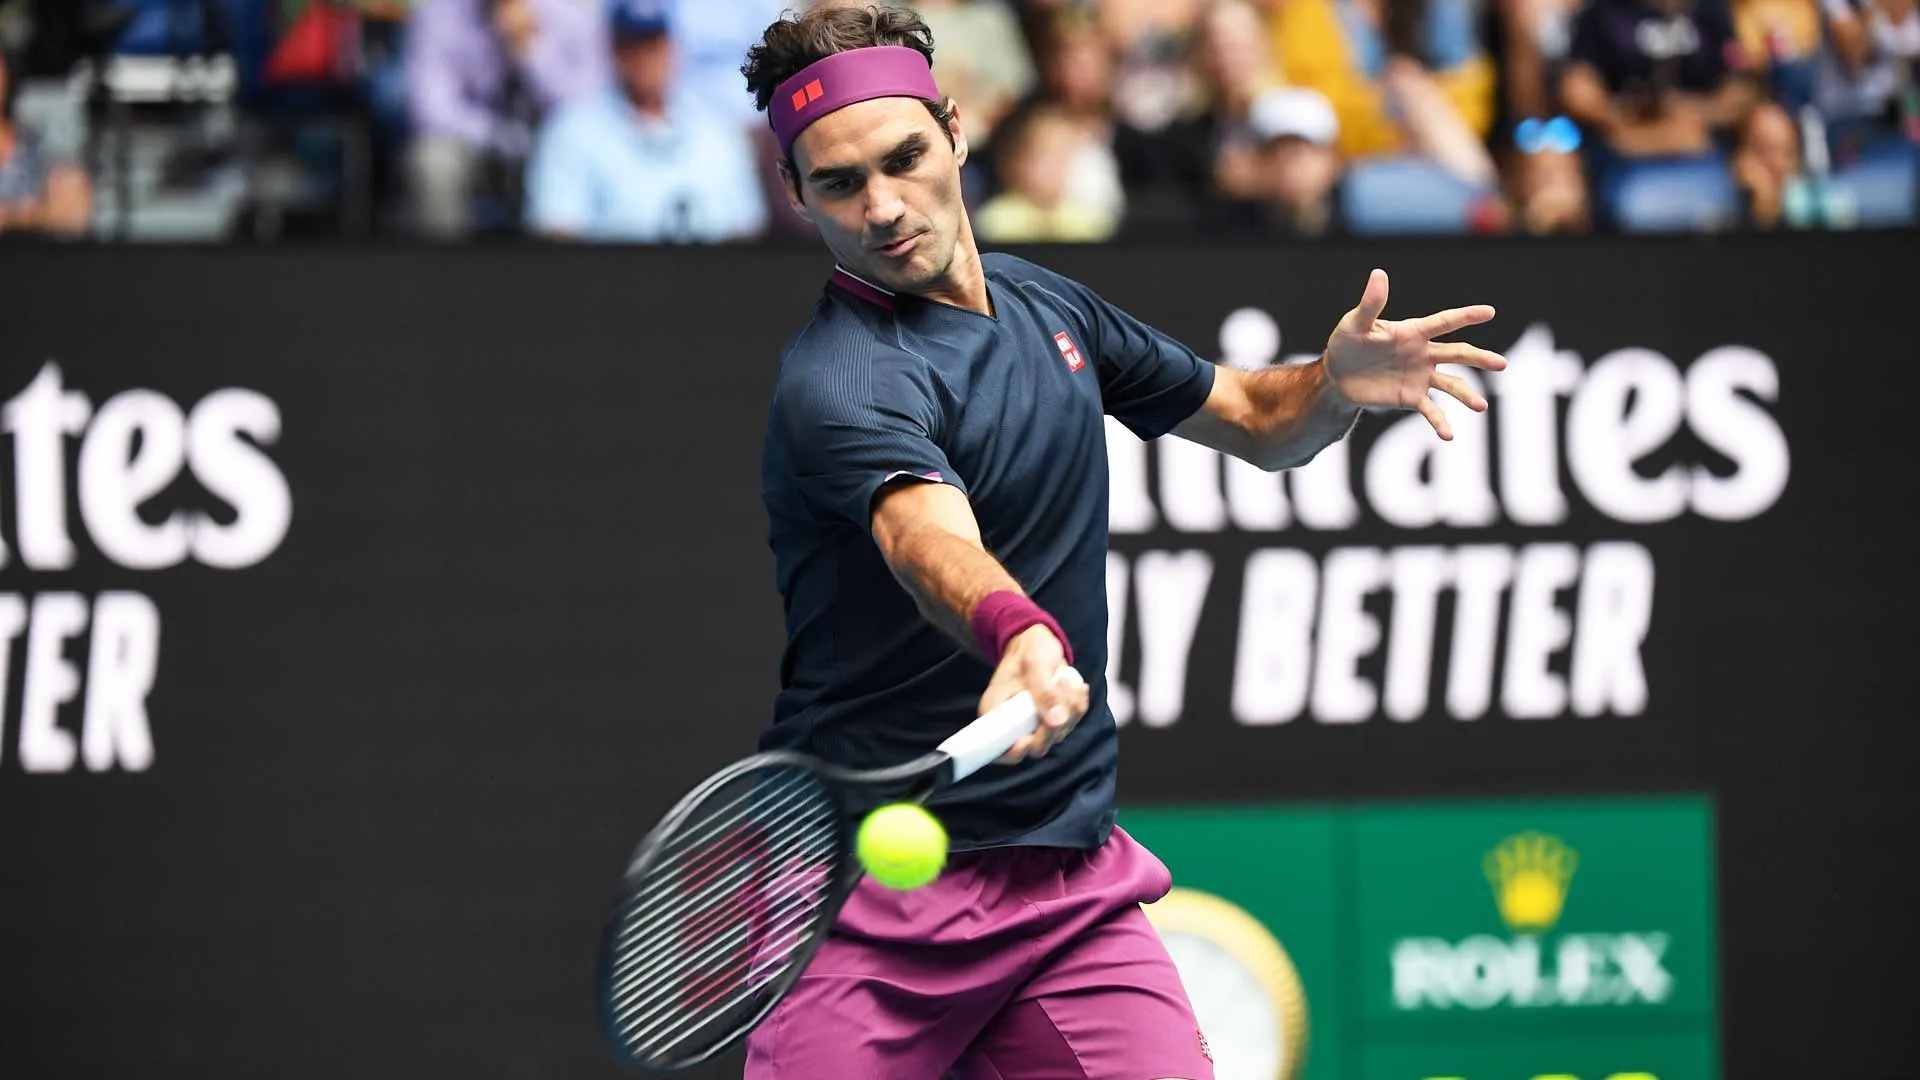 Roger Federer bật khỏi top 4 bảng xếp hạng ATP